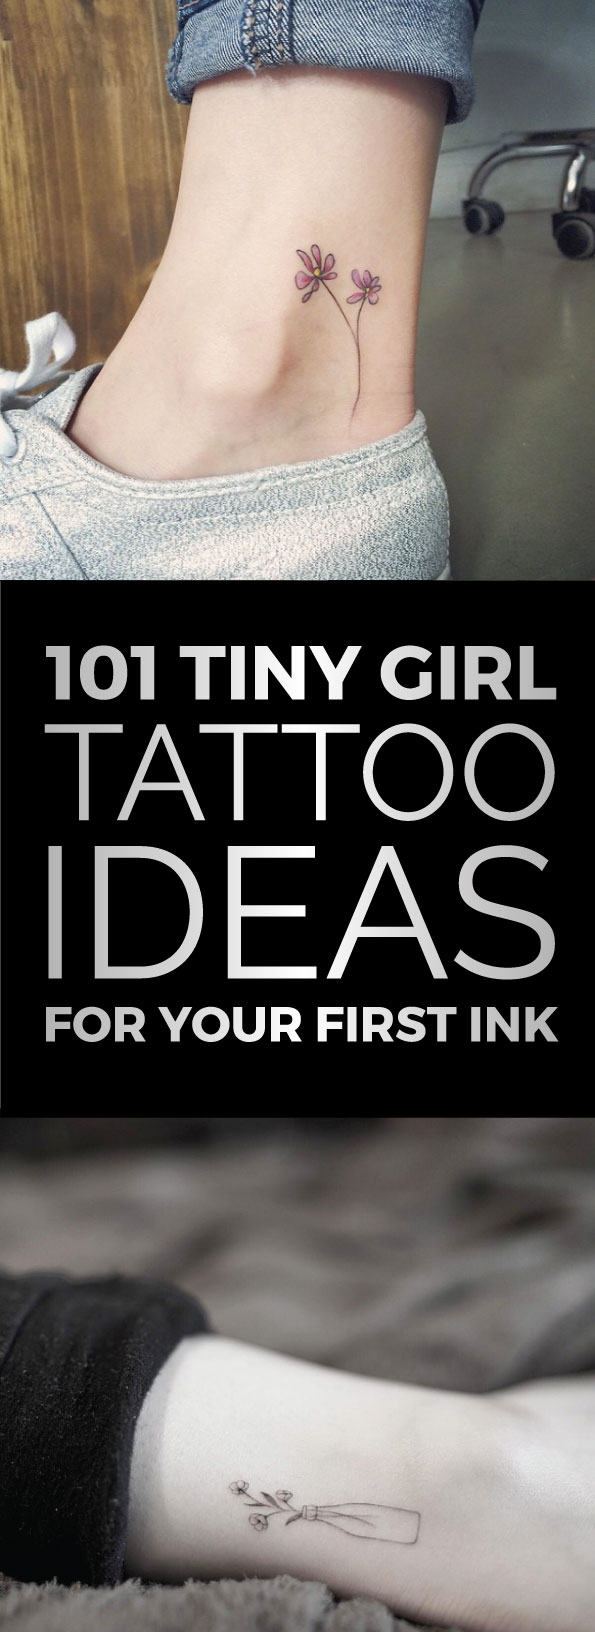 101 Tiny Girl Tattoo Ideas | TattooBlend